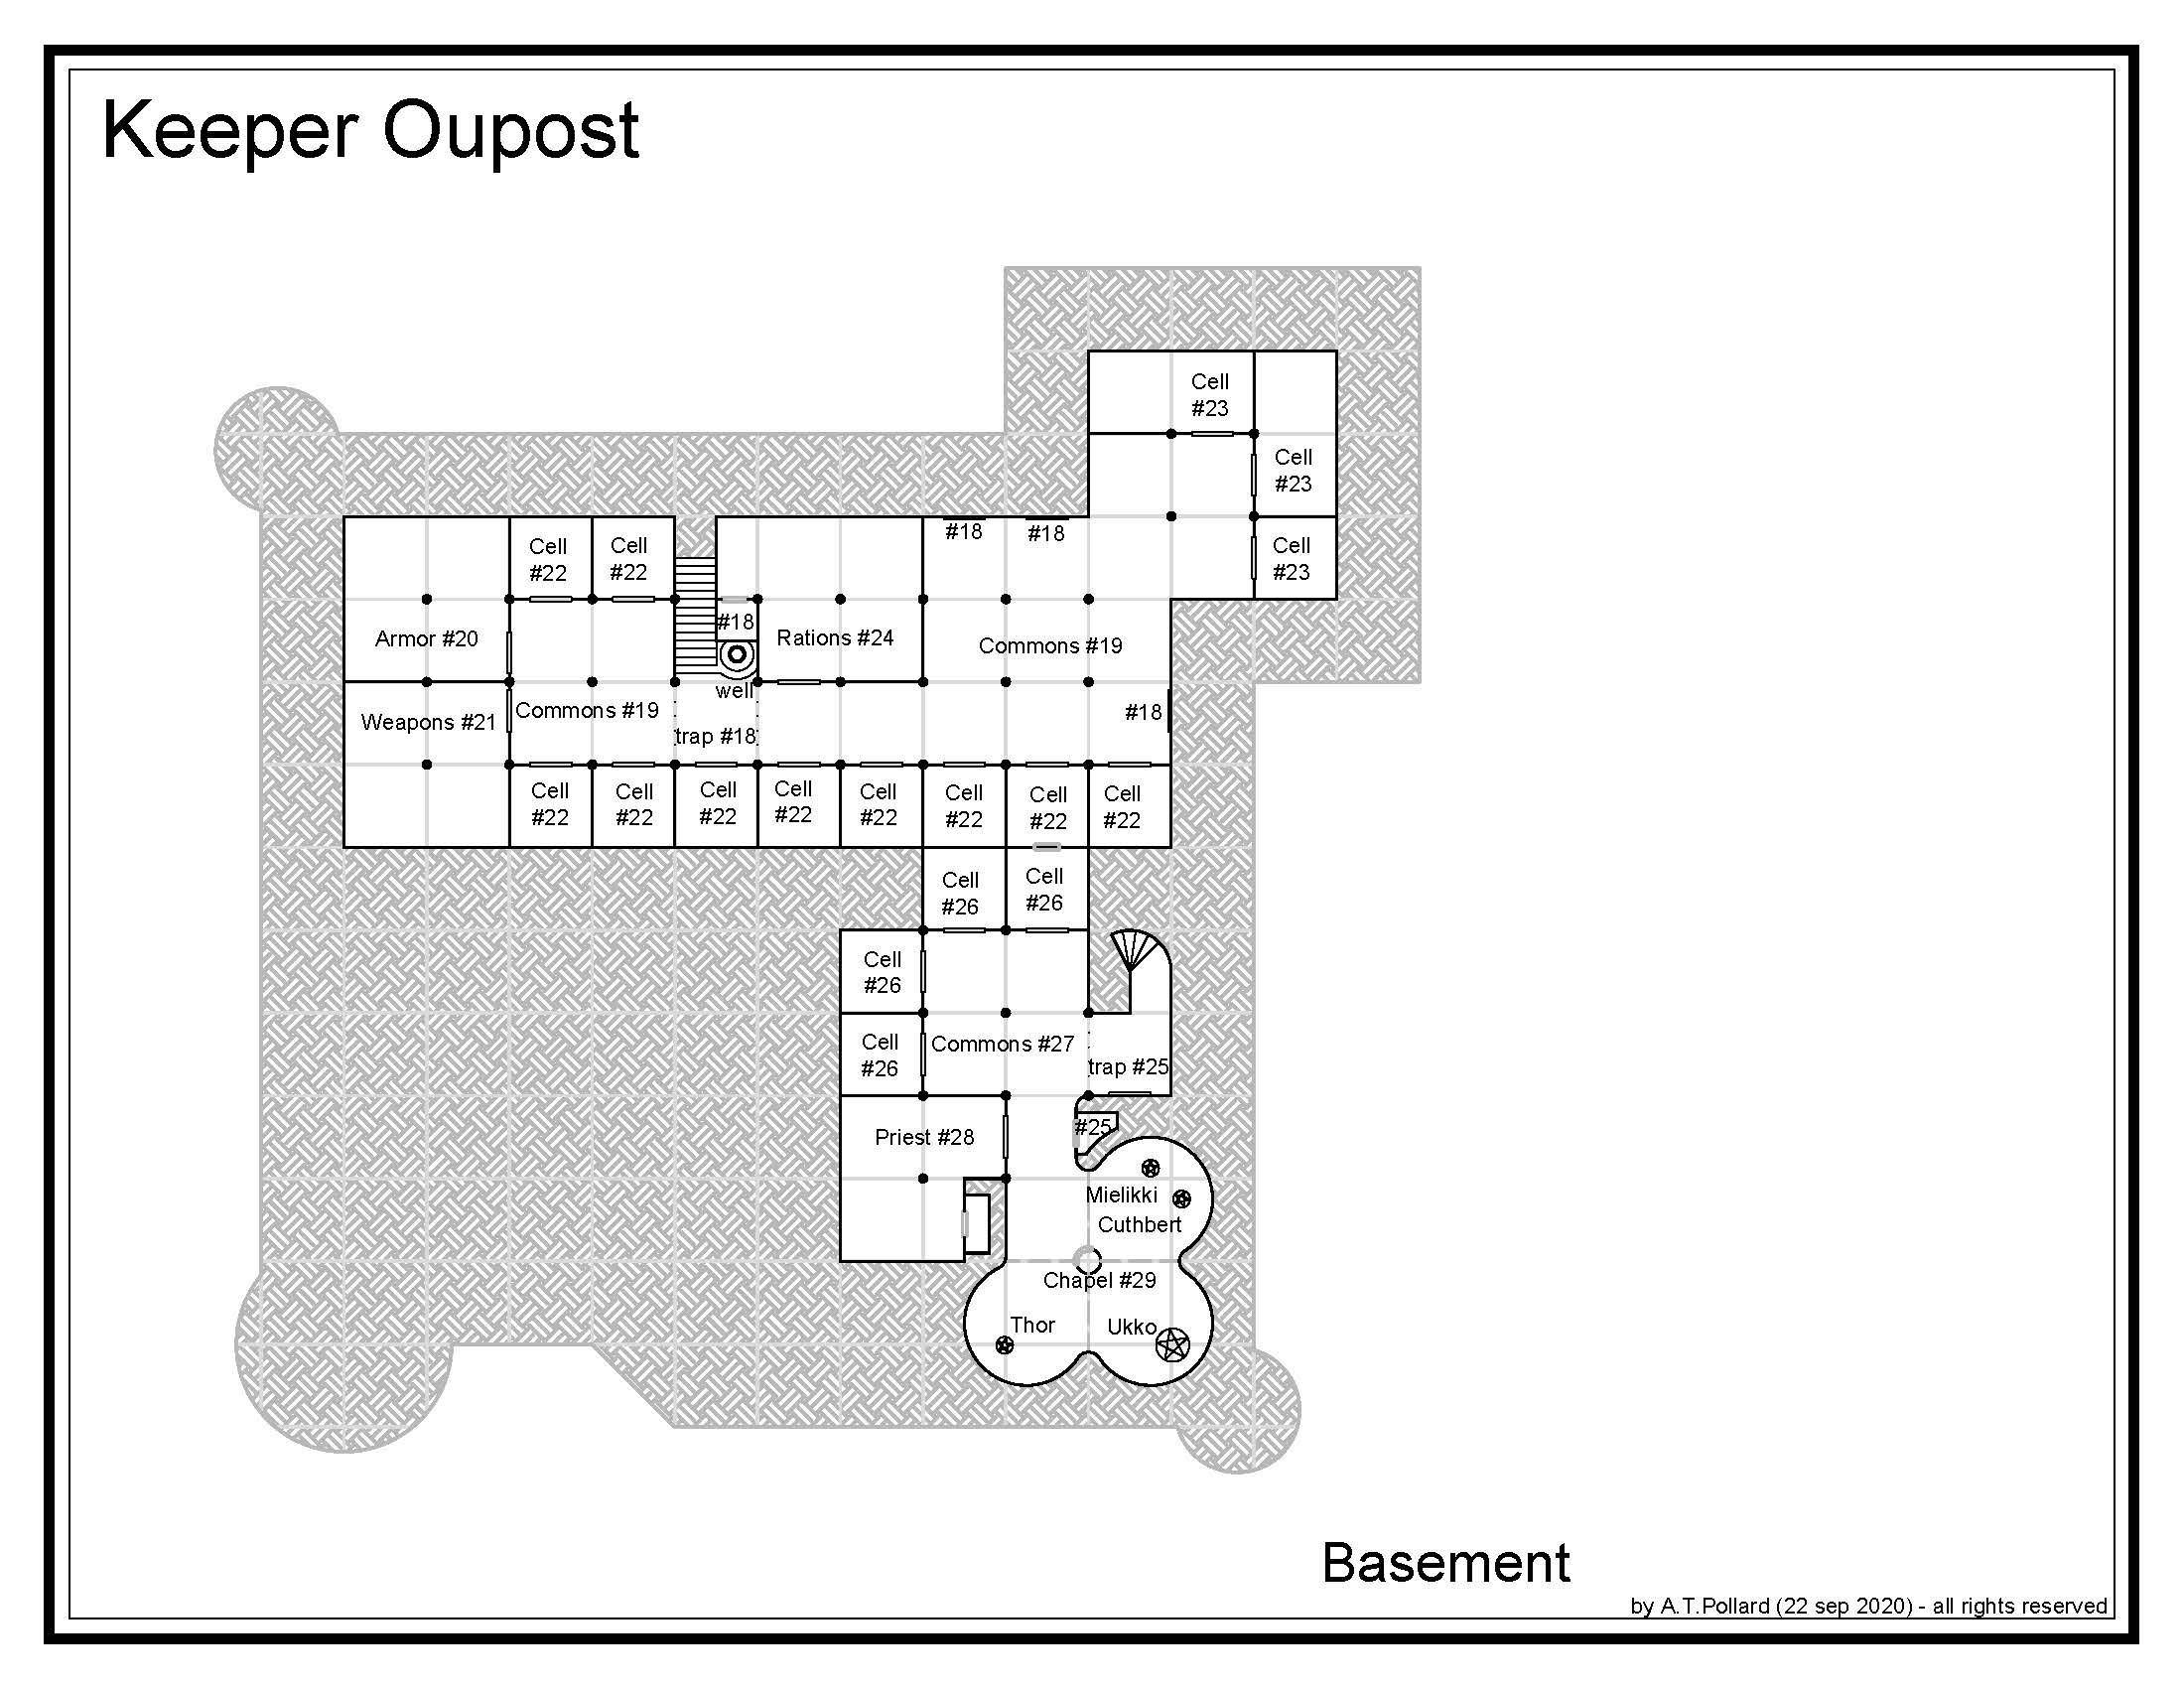 KEEPER Outpost-Basement2.jpg